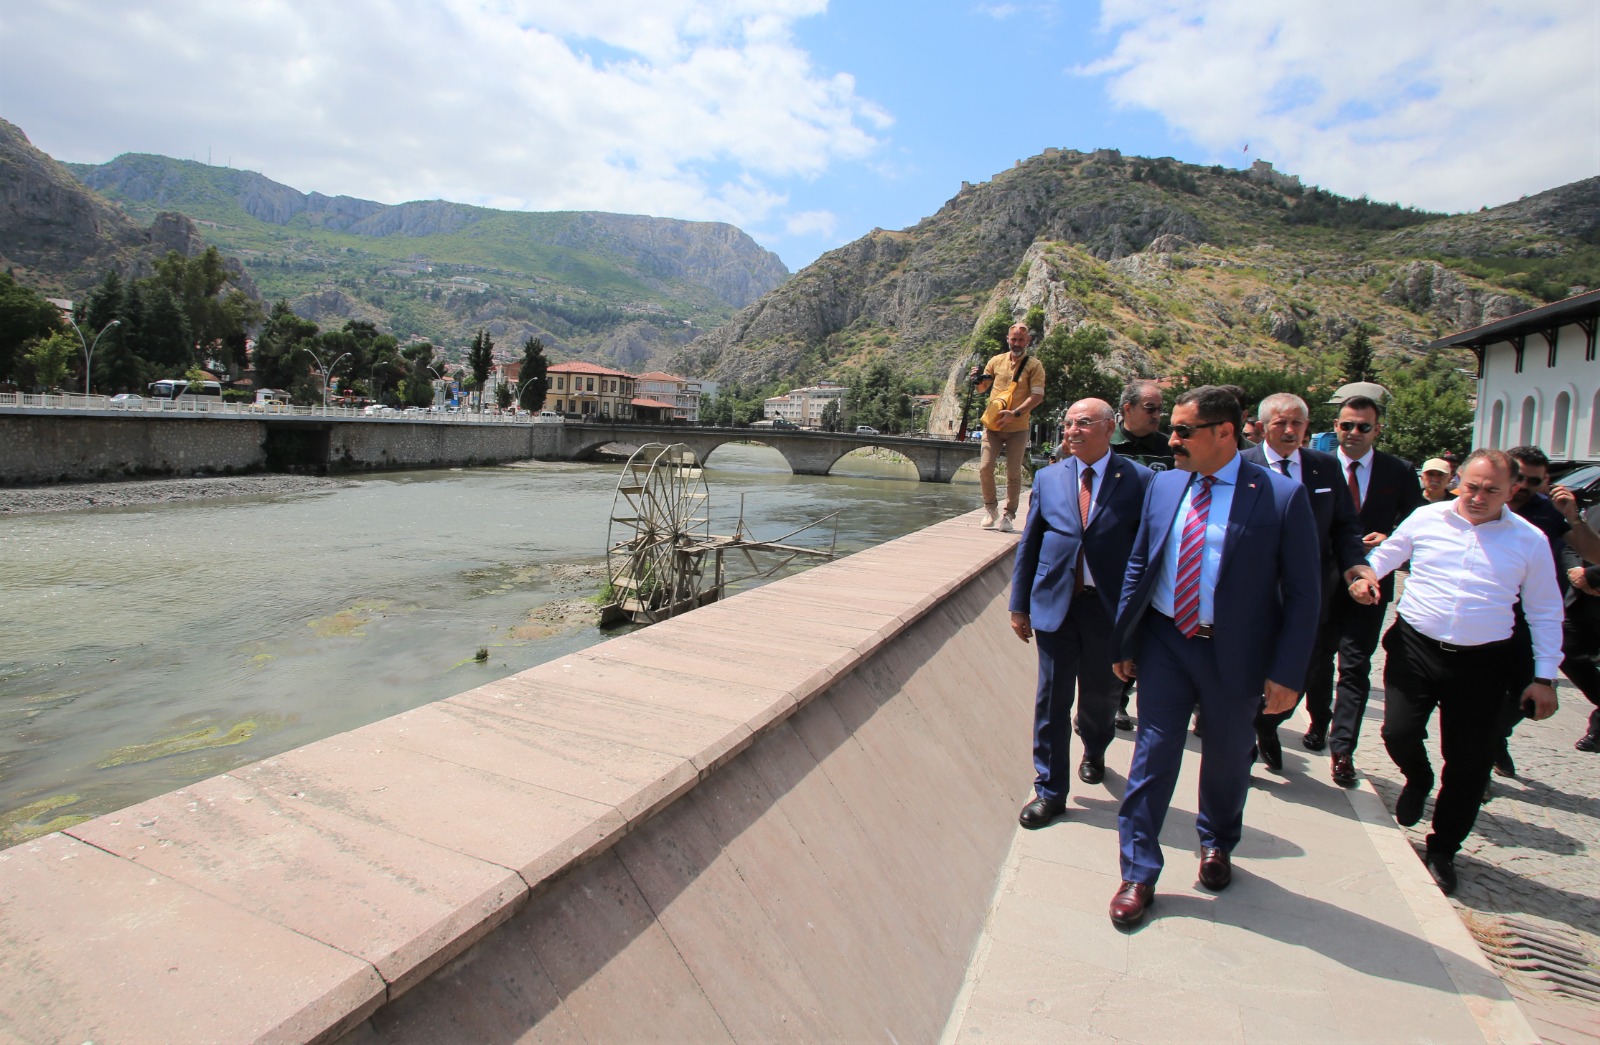 Amasya Valisi Mustafa MASATLI: “Yeşilırmak Nehri Temizleme, Islah ve Rekreasyon Projesi, Yeşilırmak ve Çevresini Cazibe Merkezi Haline Getirecek.”